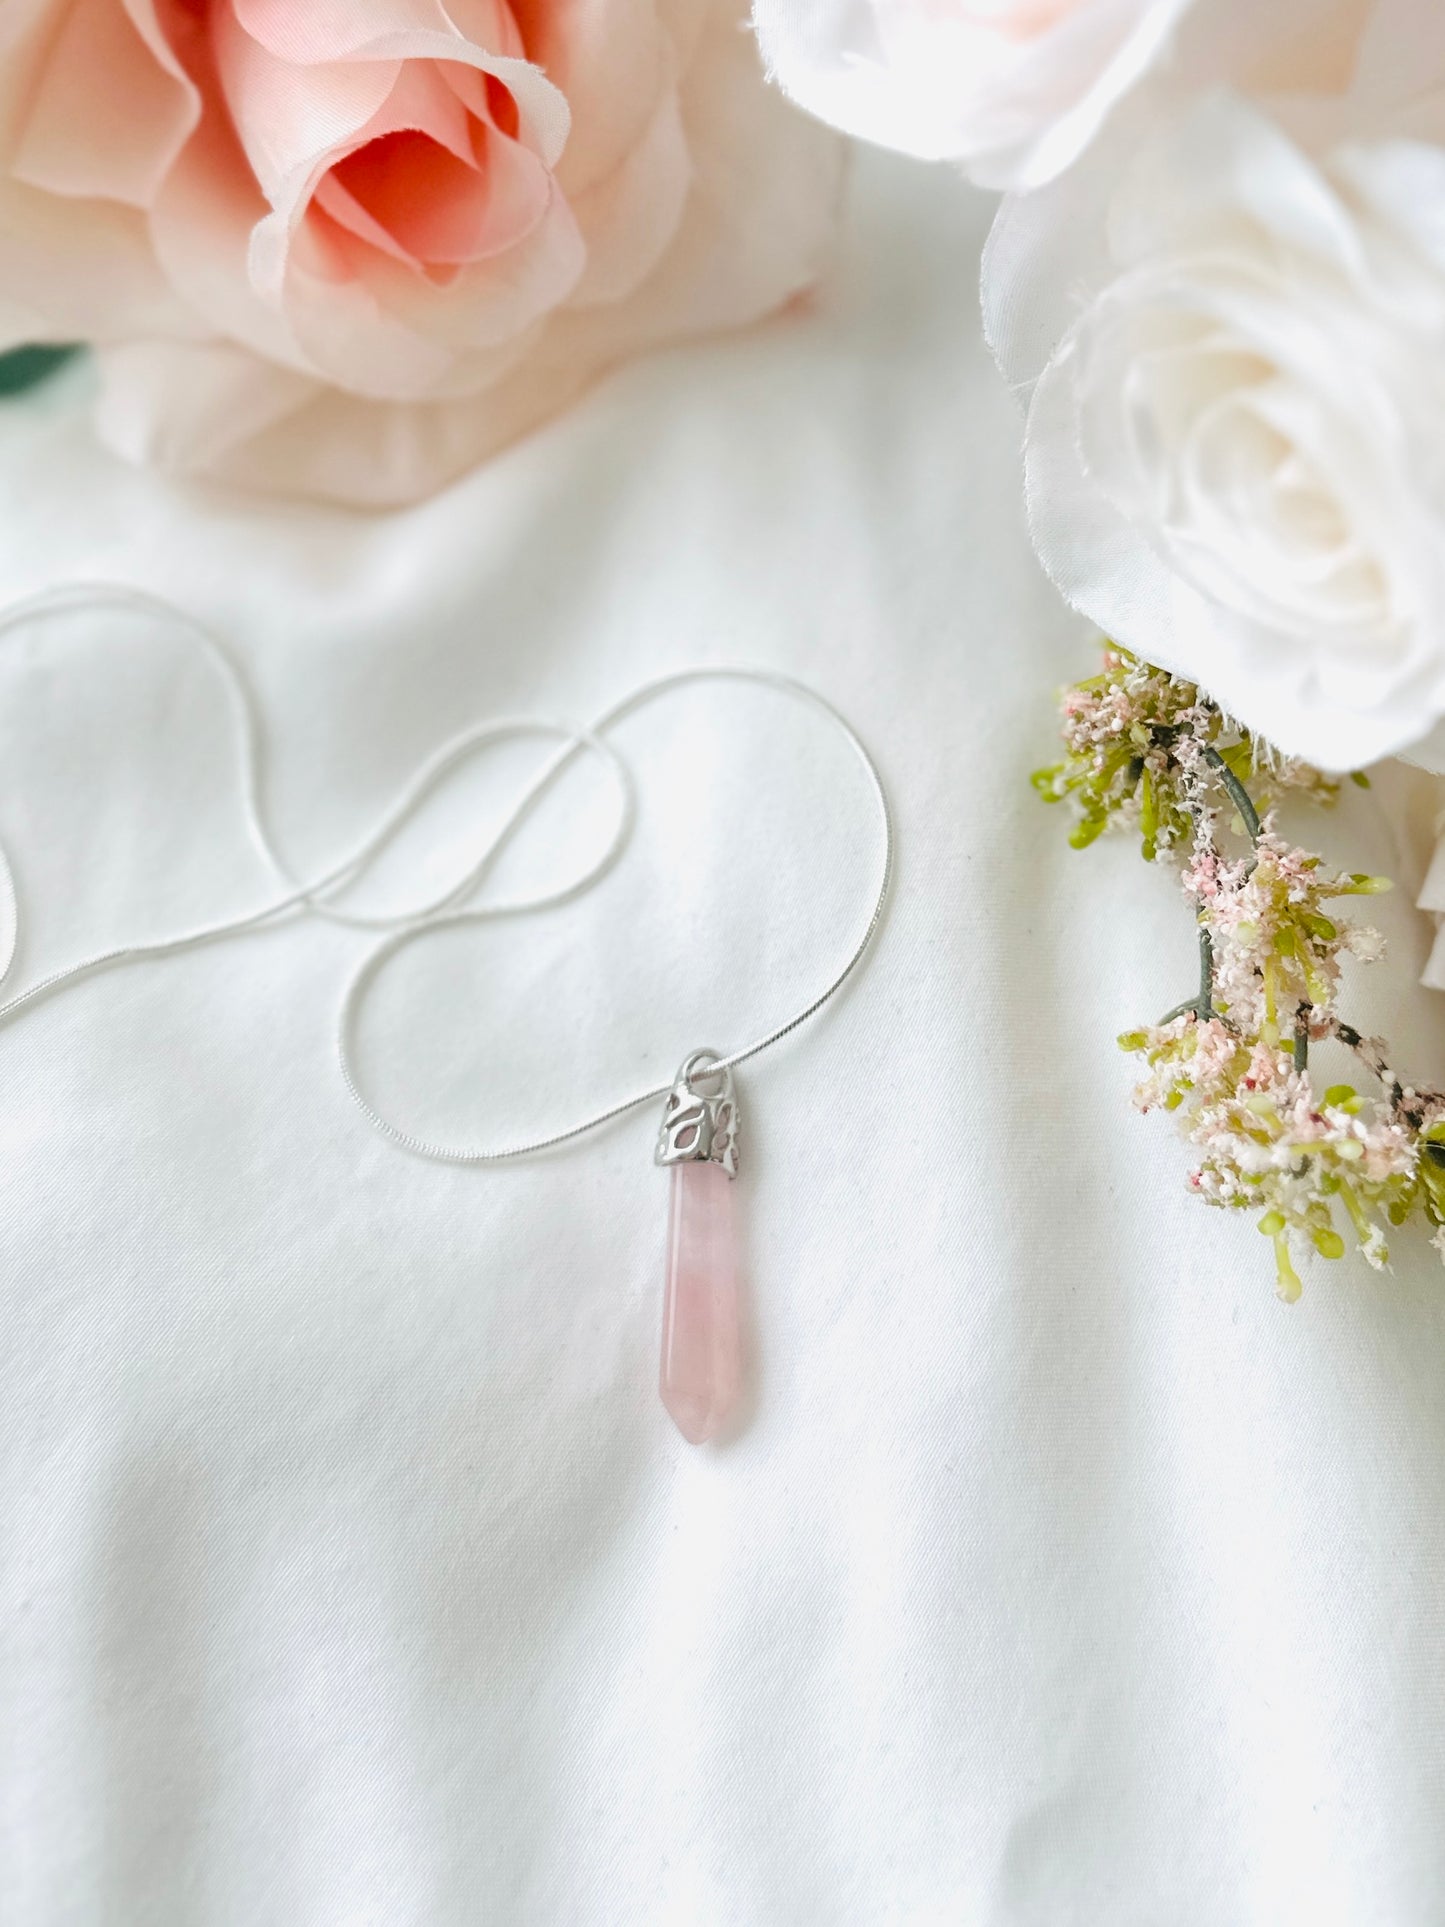 sterling silver Rose quartz pendant necklace